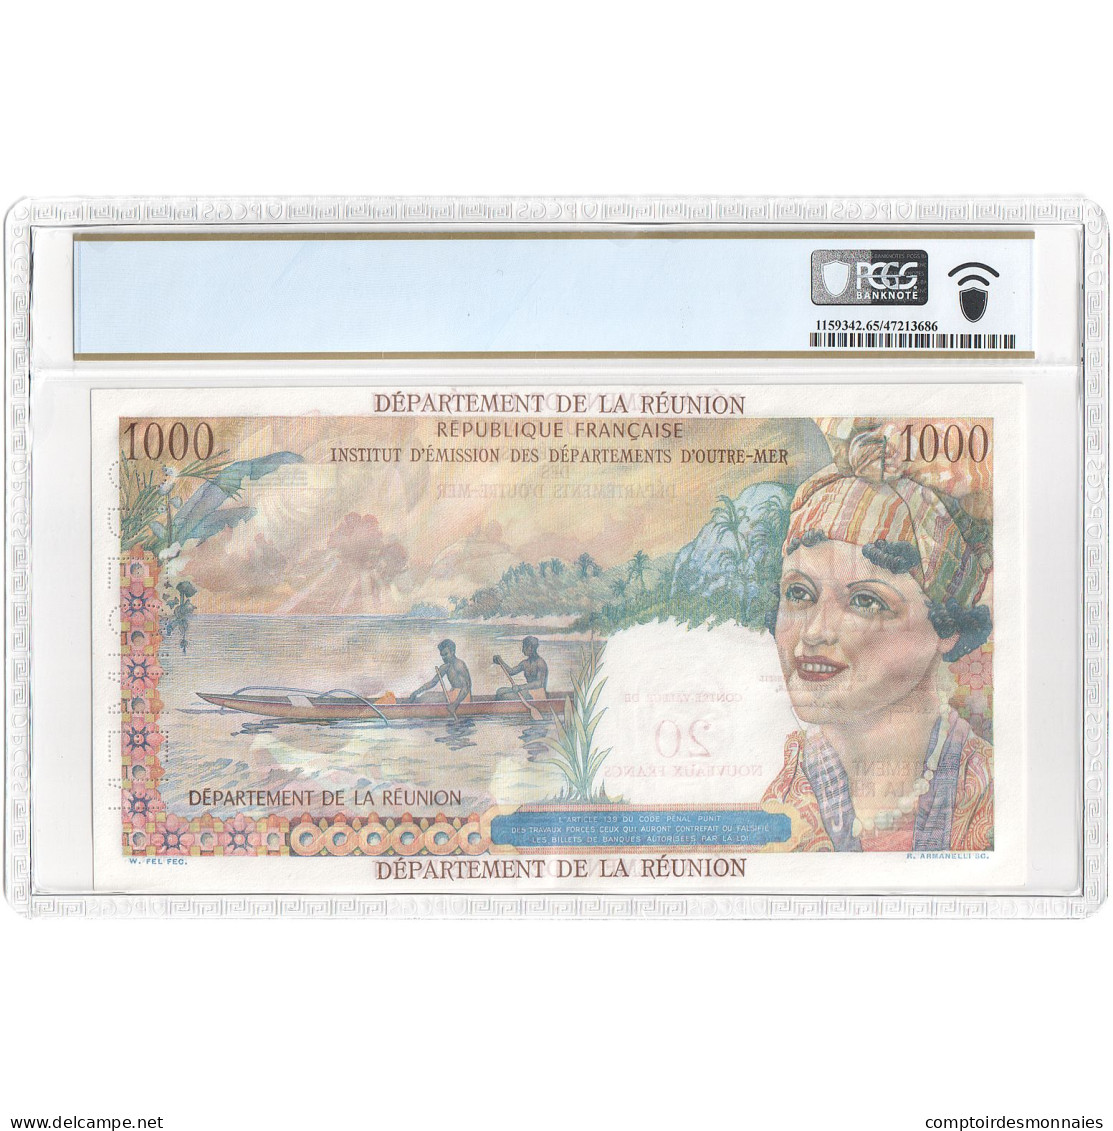 Réunion, 20 Nouveaux Francs On 1000 Francs, Union Française, Undated (1967) - Fiktive & Specimen